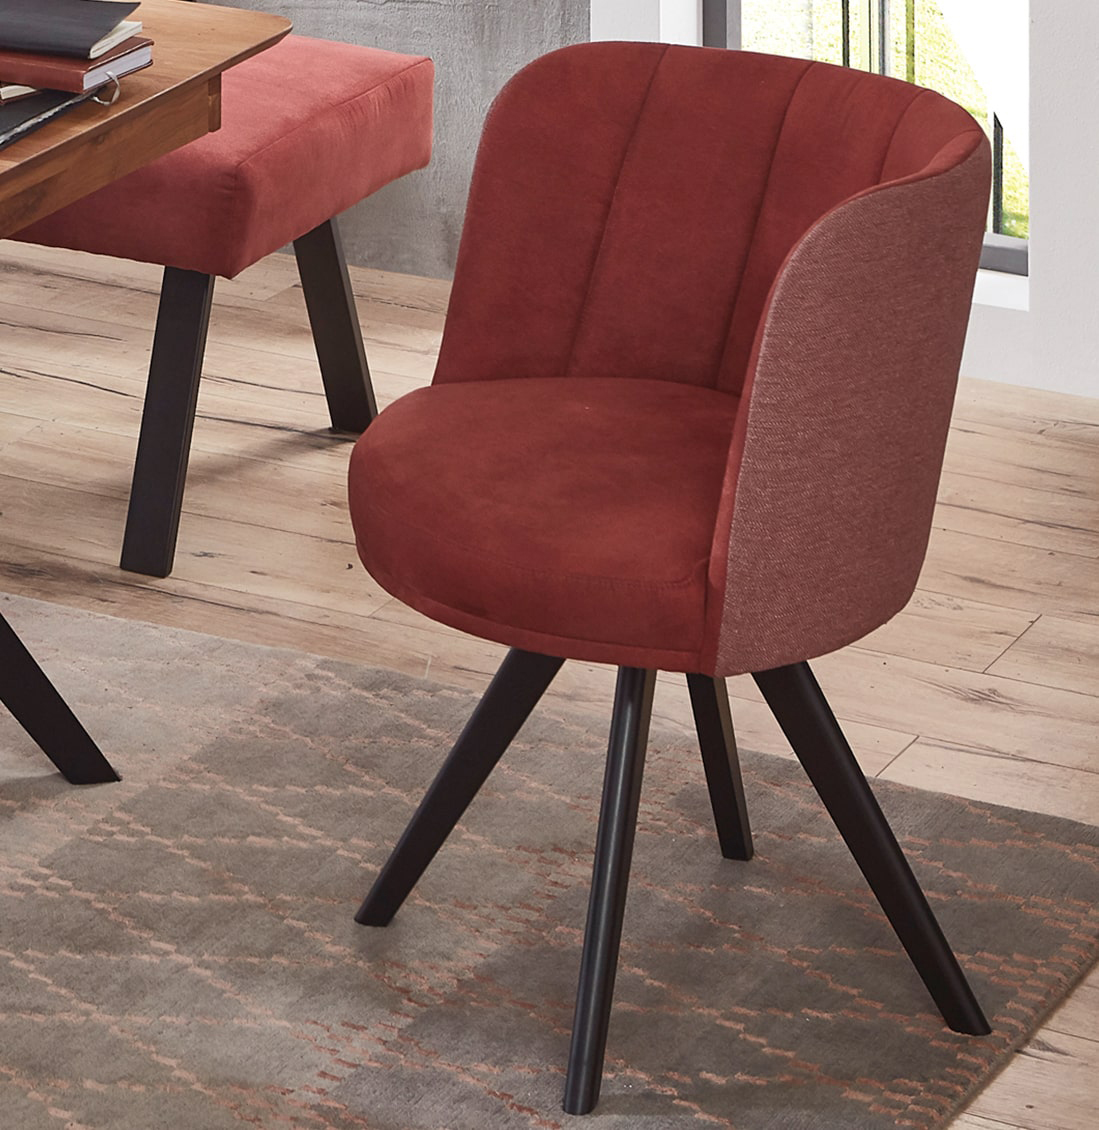 Standard Furniture Palma Polsterstuhl mit rundem Sitz und Lehne auch drehbar